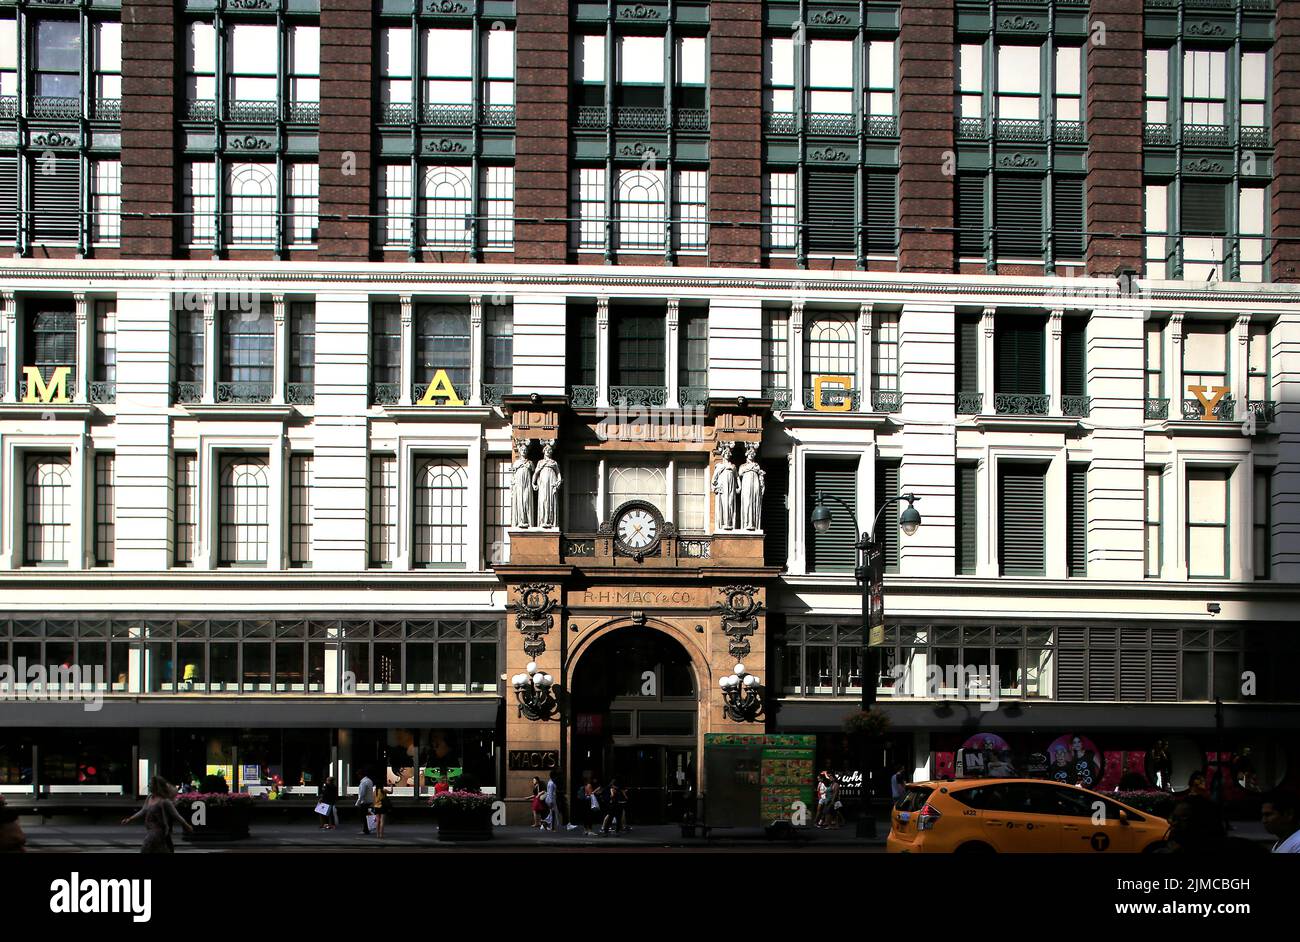 Macy`s, Department Store, Department Store, Manhattan, New York City, USA Stock Photo